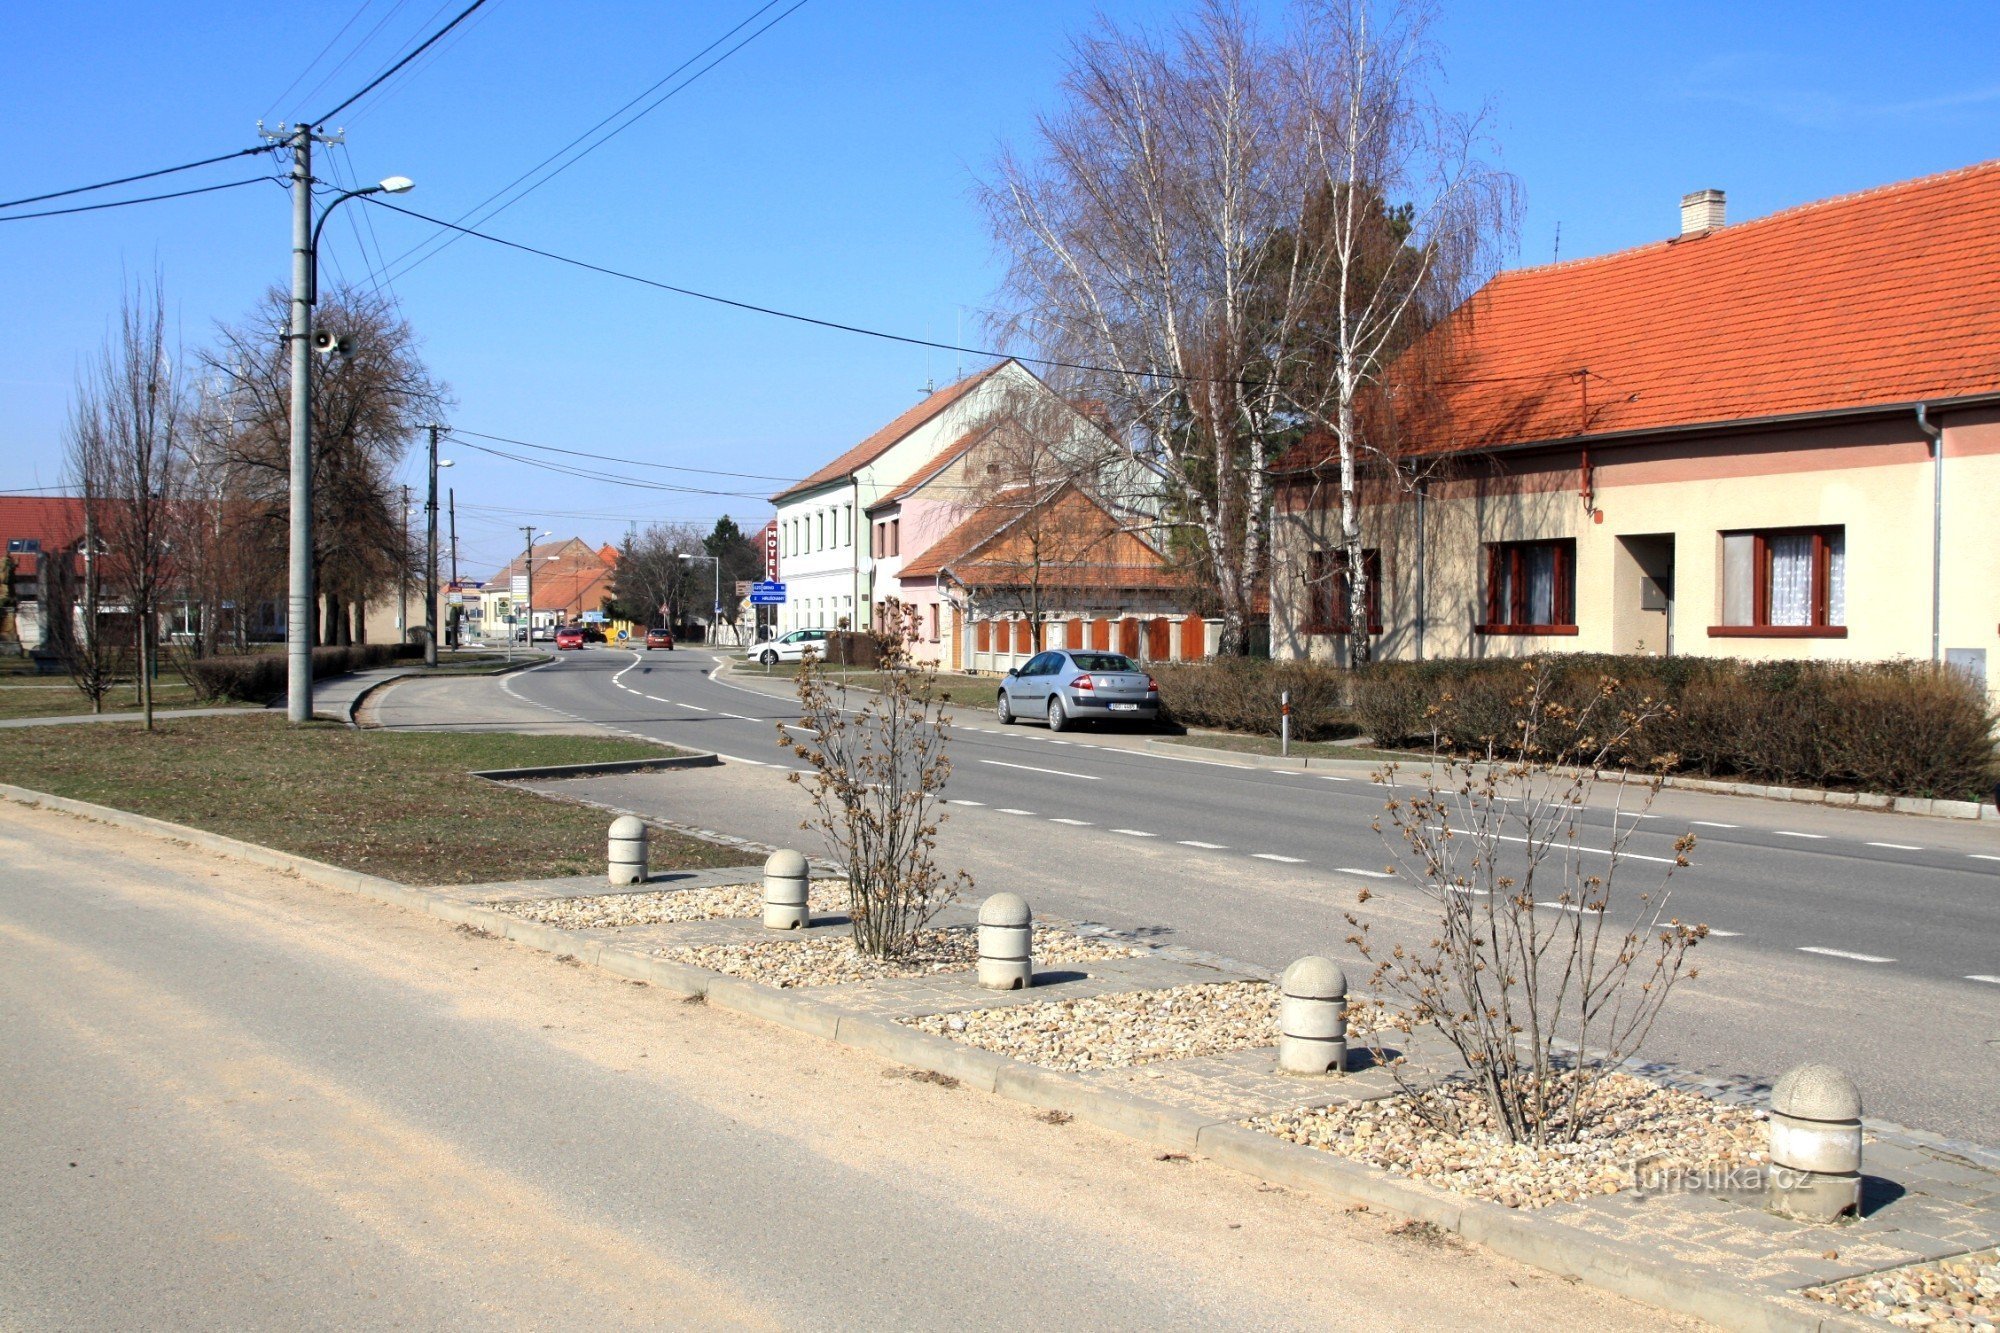 沃伊科维采的主要街道